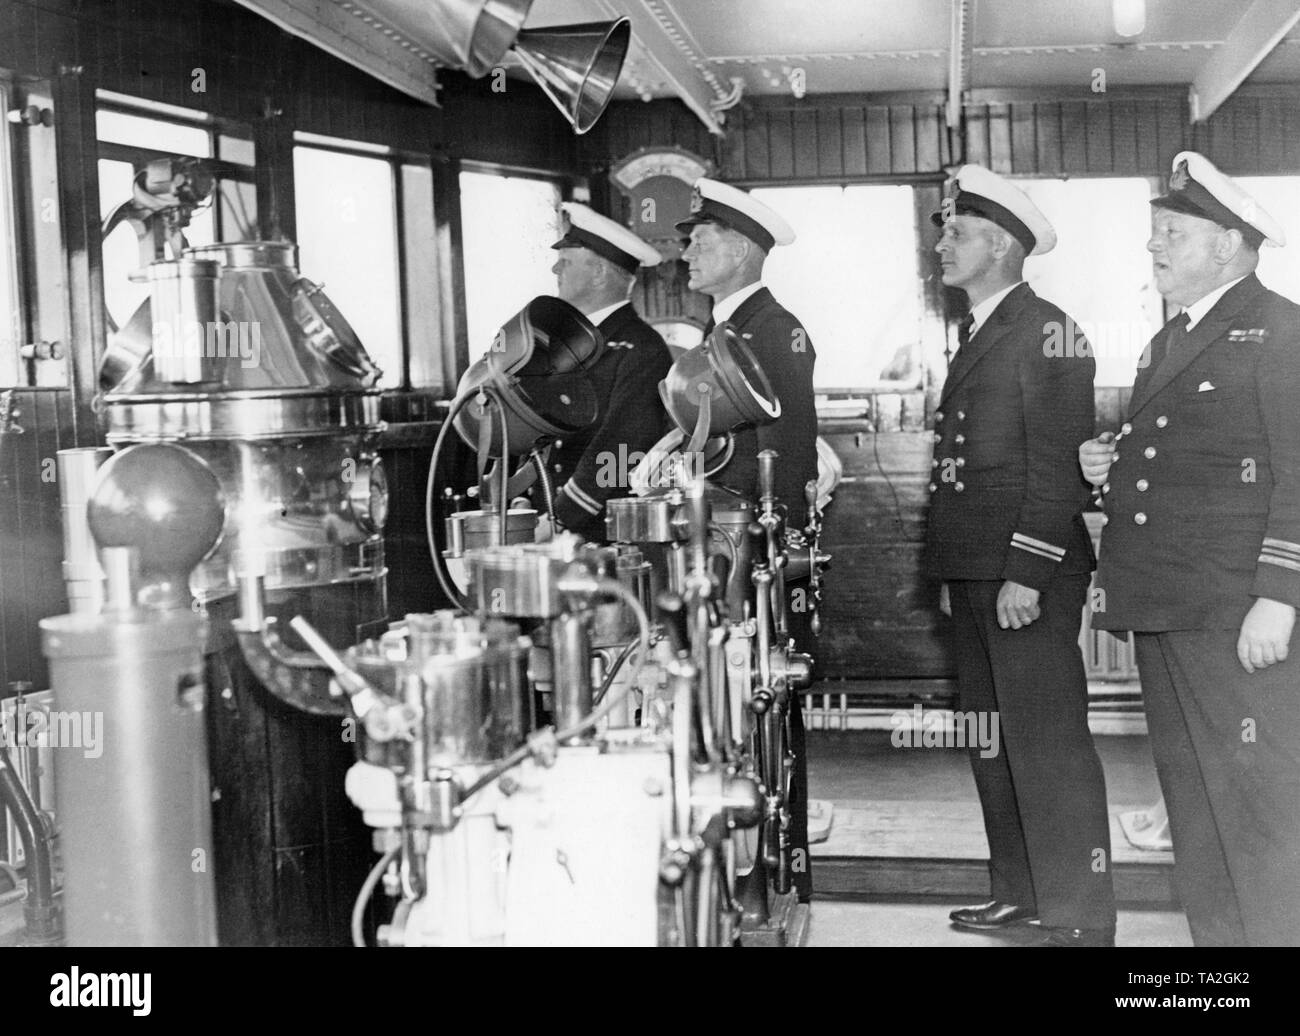 P.O Davis (deuxième officier), A.C.I. Anson (troisième officier), F.G. Watts (troisième officier) et G.L. Dunbar (premier officier) sur le pont du paquebot "Queen Mary" avant son voyage inaugural de Southampton à New York. Banque D'Images